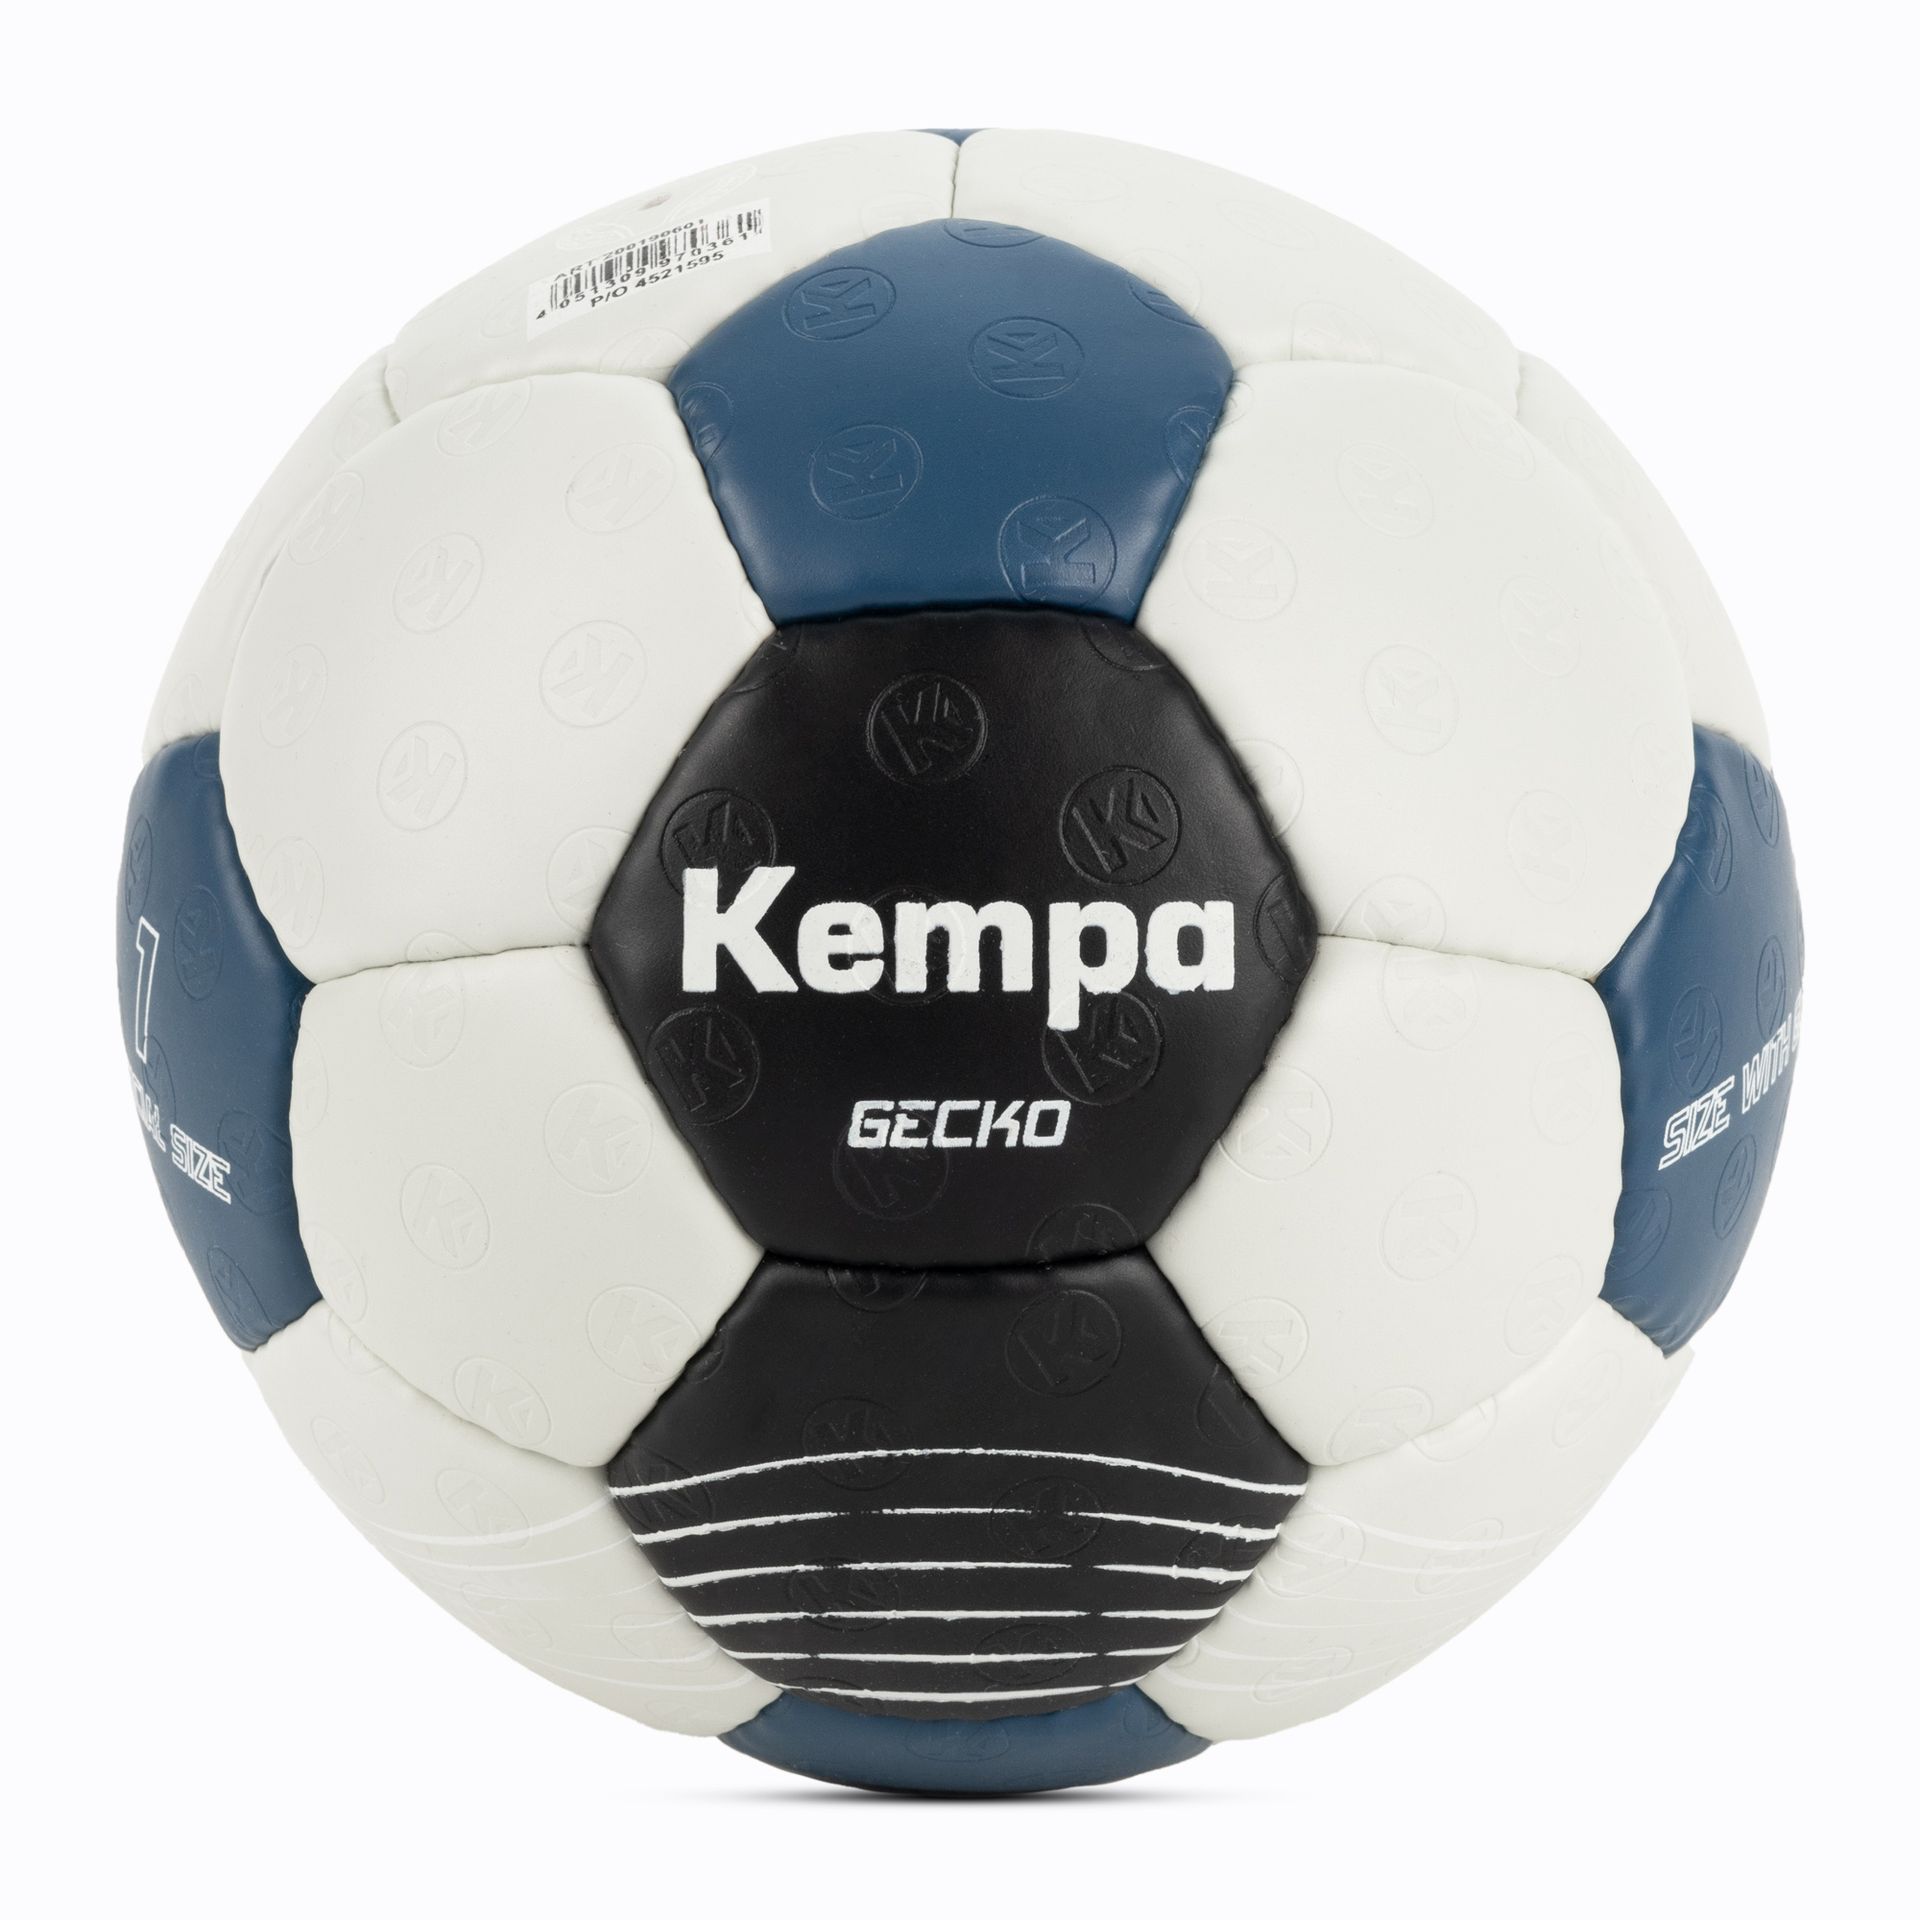 Piłka do piłki ręcznej Kempa Gecko szara/niebieska rozmiar 1 | WYSYŁKA W 24H | 30 DNI NA ZWROT